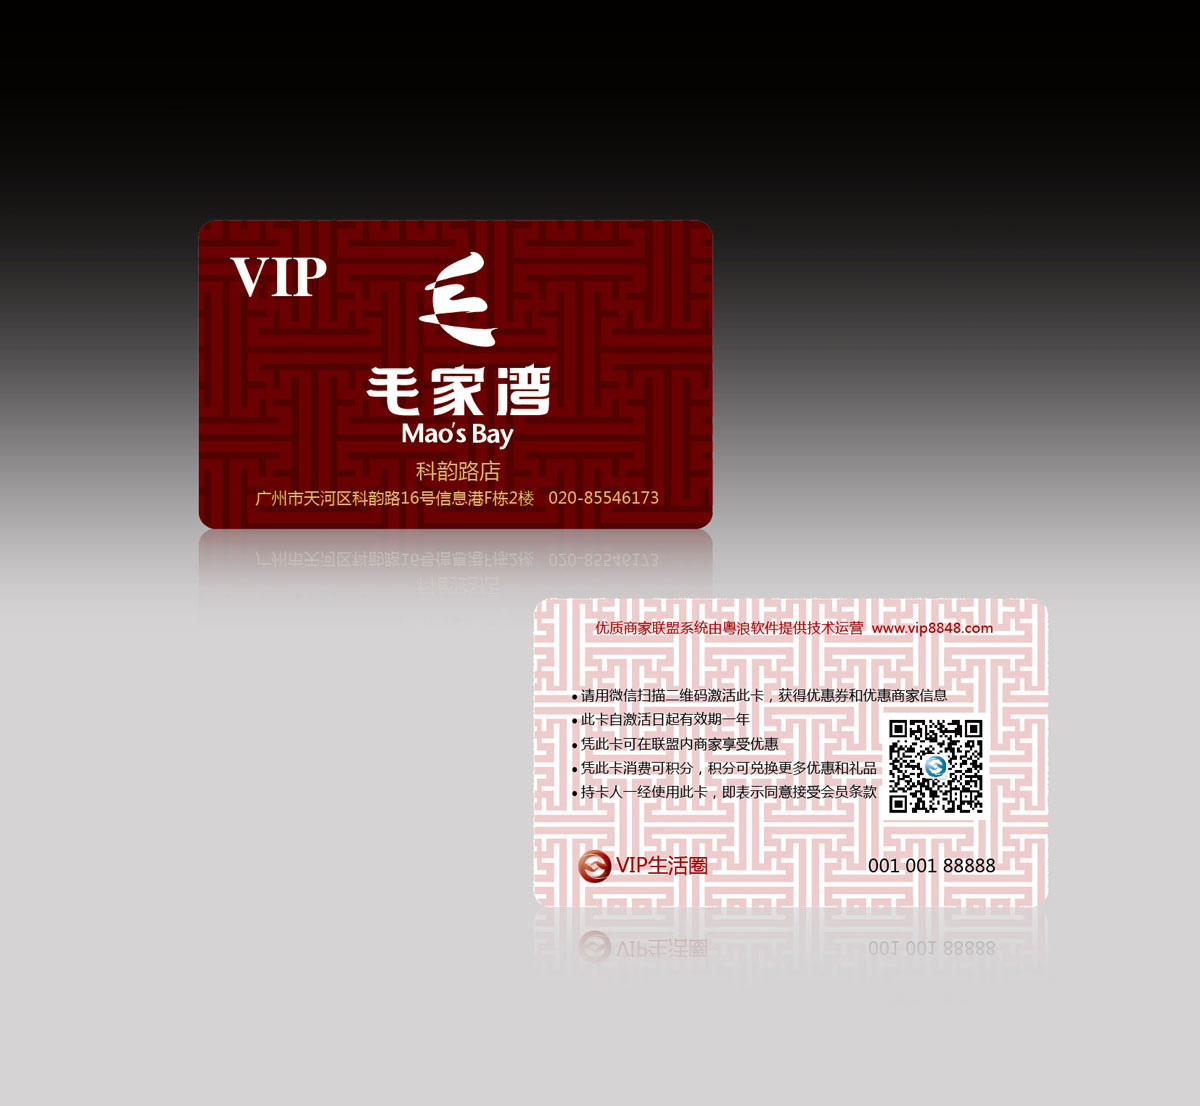 毛家湾饭店VIP卡设计